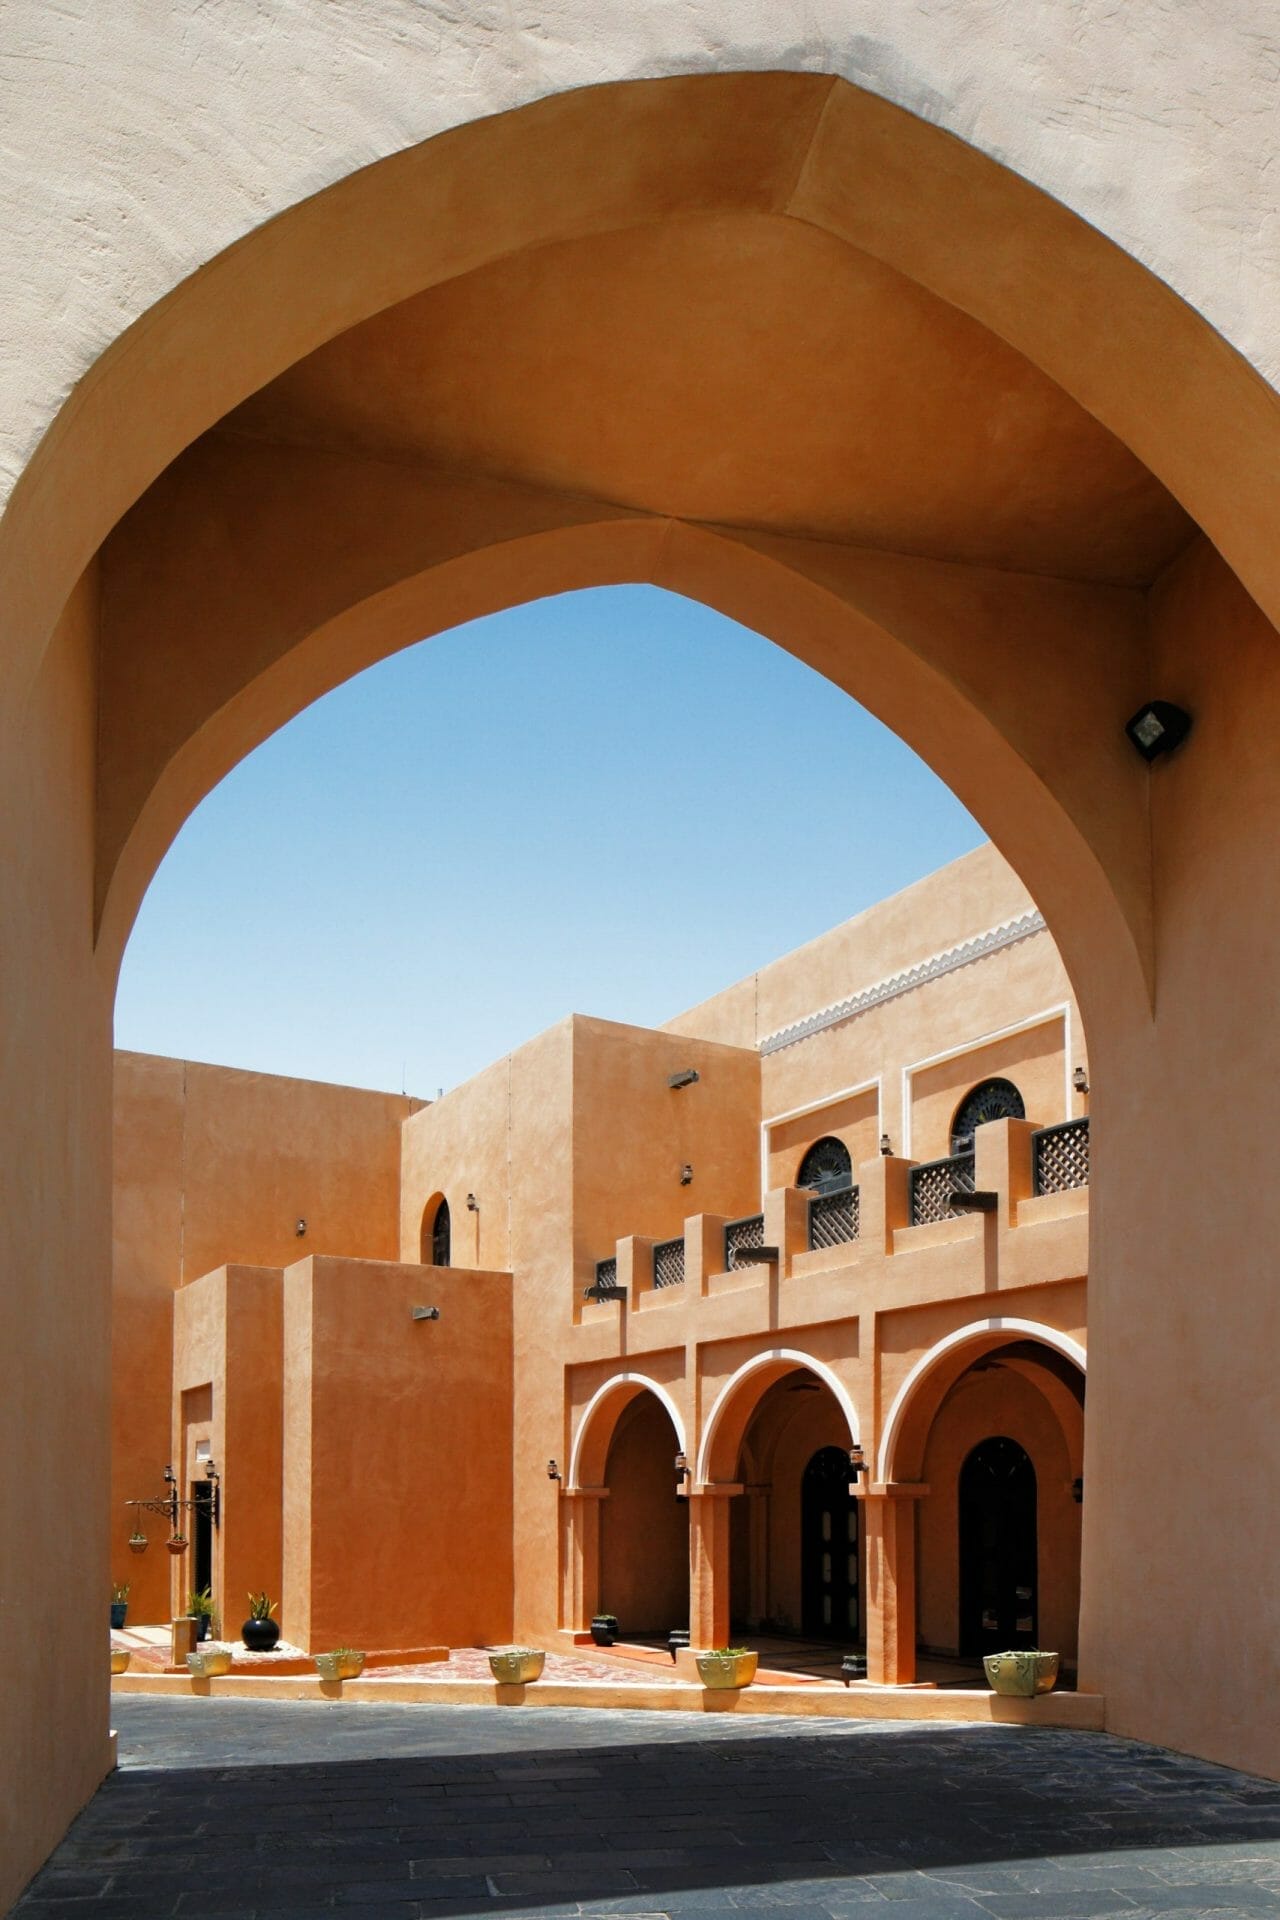 Katara is a cultural village in Doha, Qatar